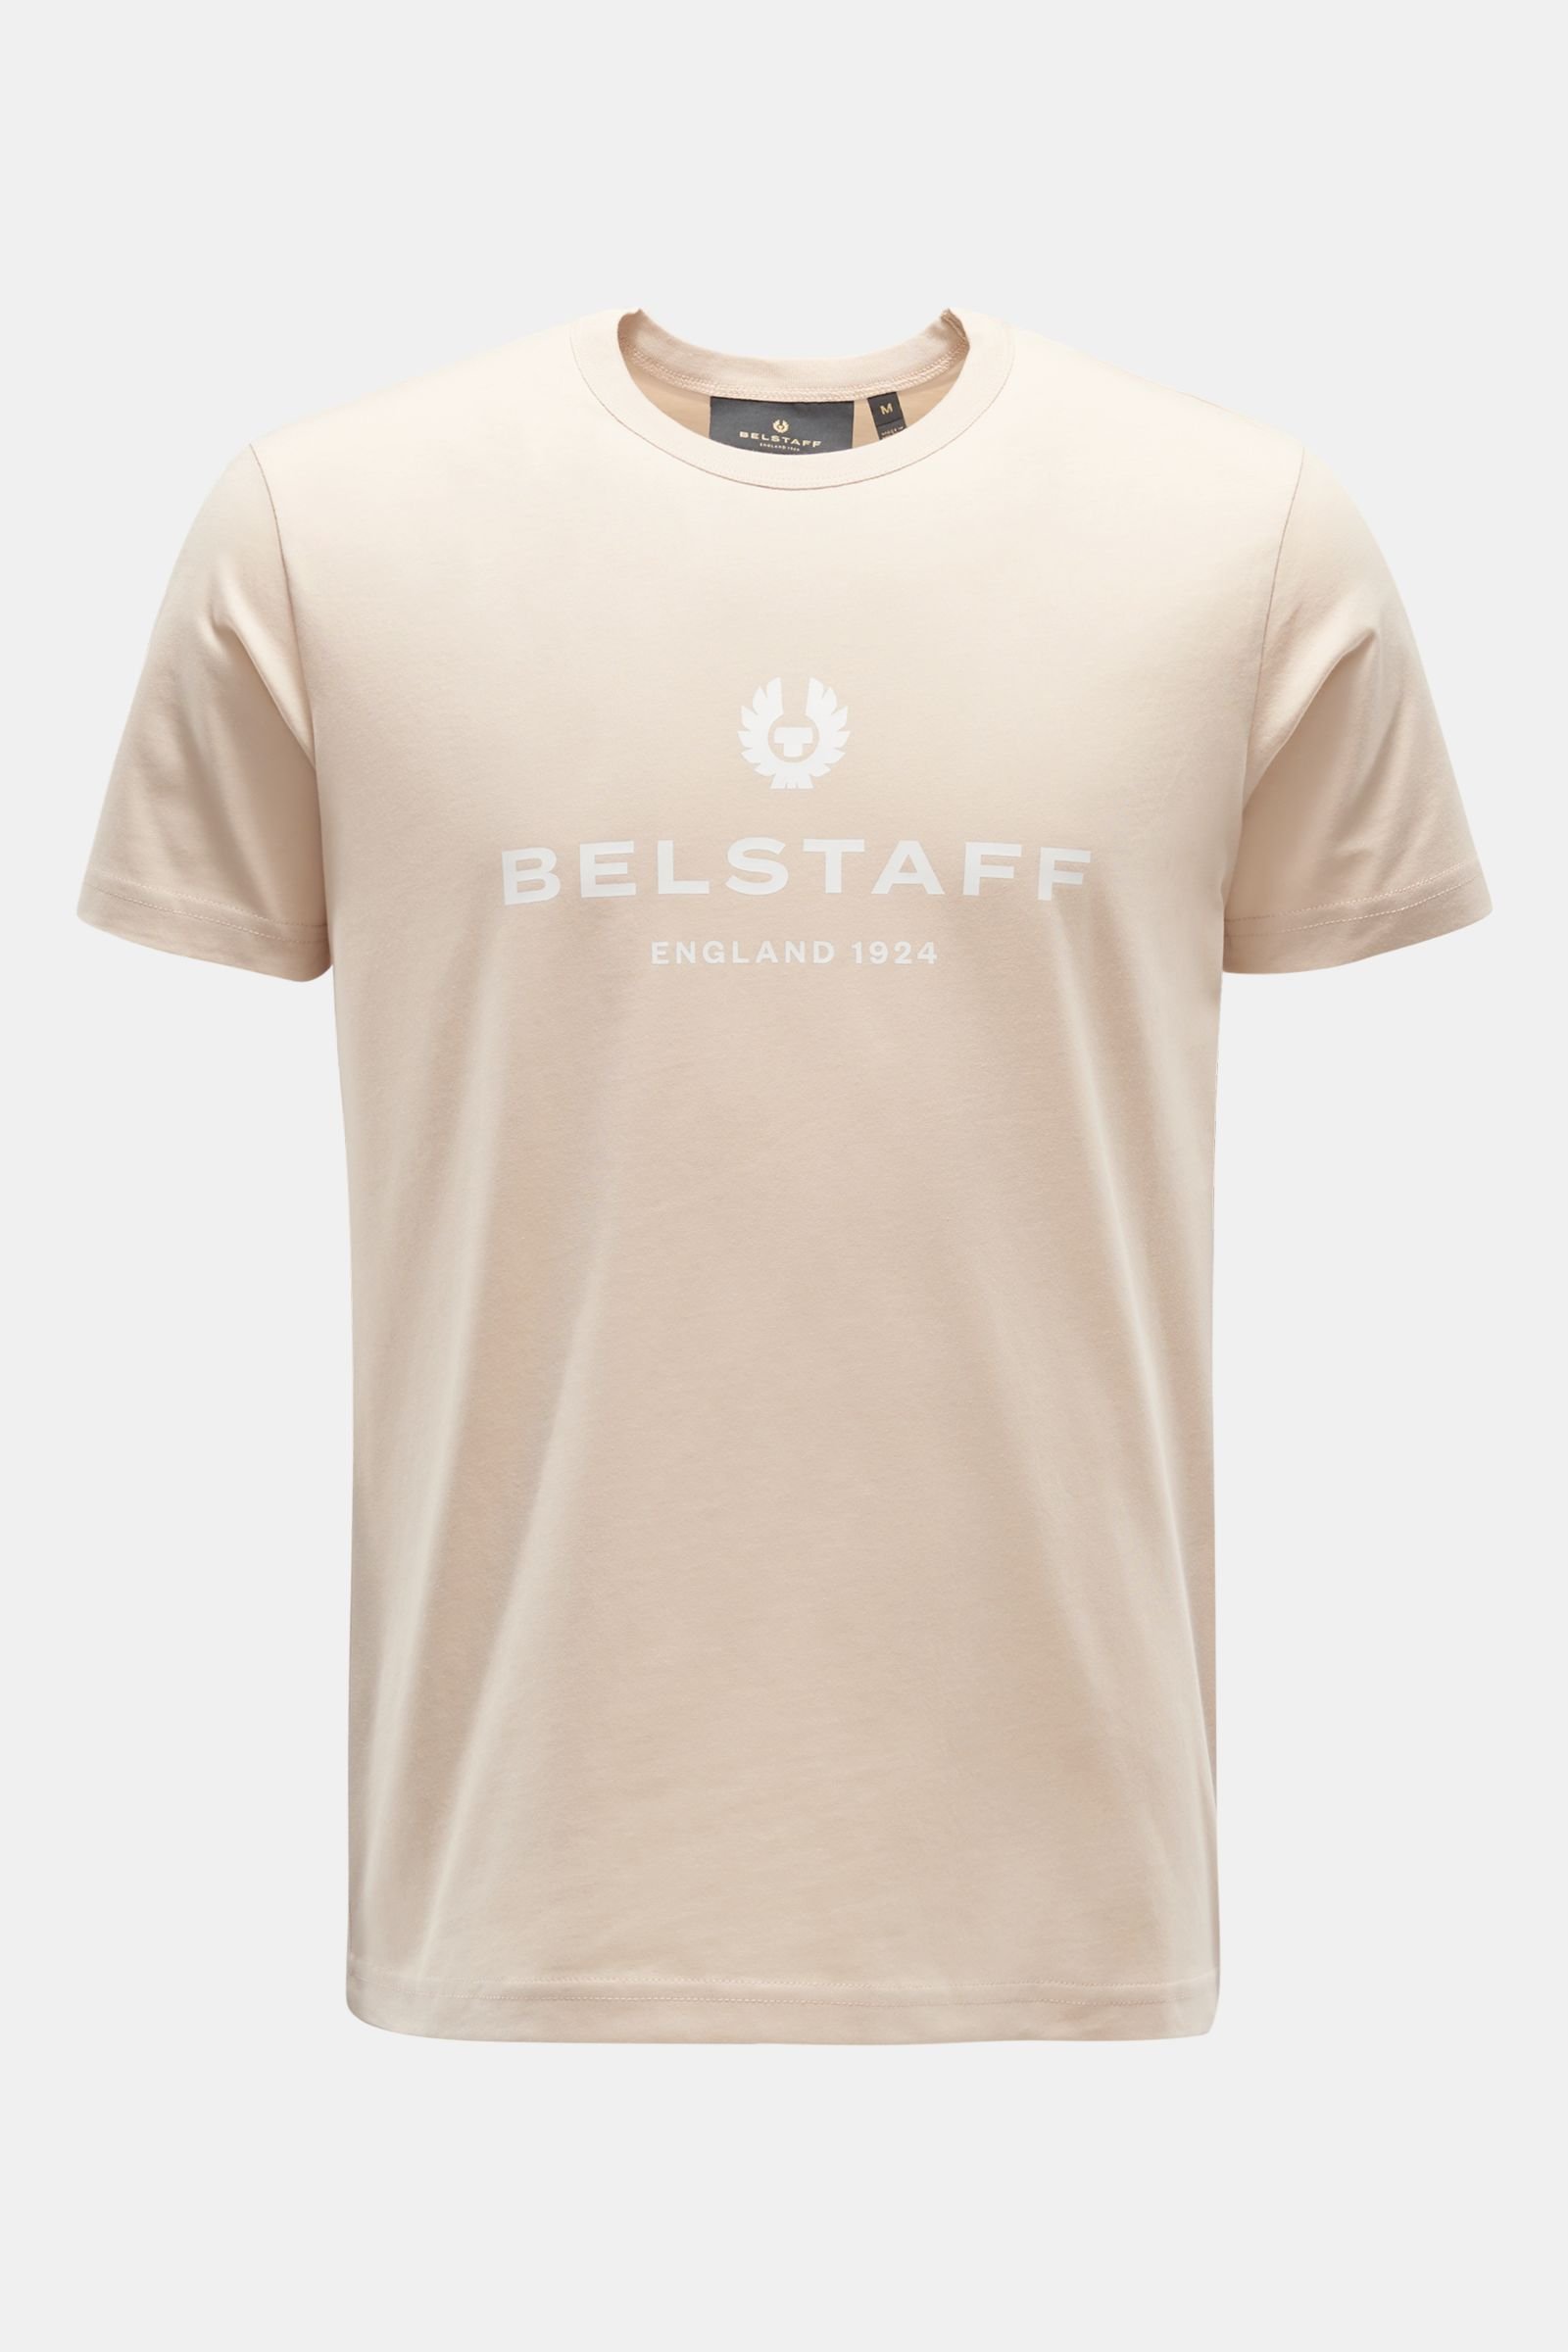 Rundhals-T-Shirt 'Belstaff 1924' beige